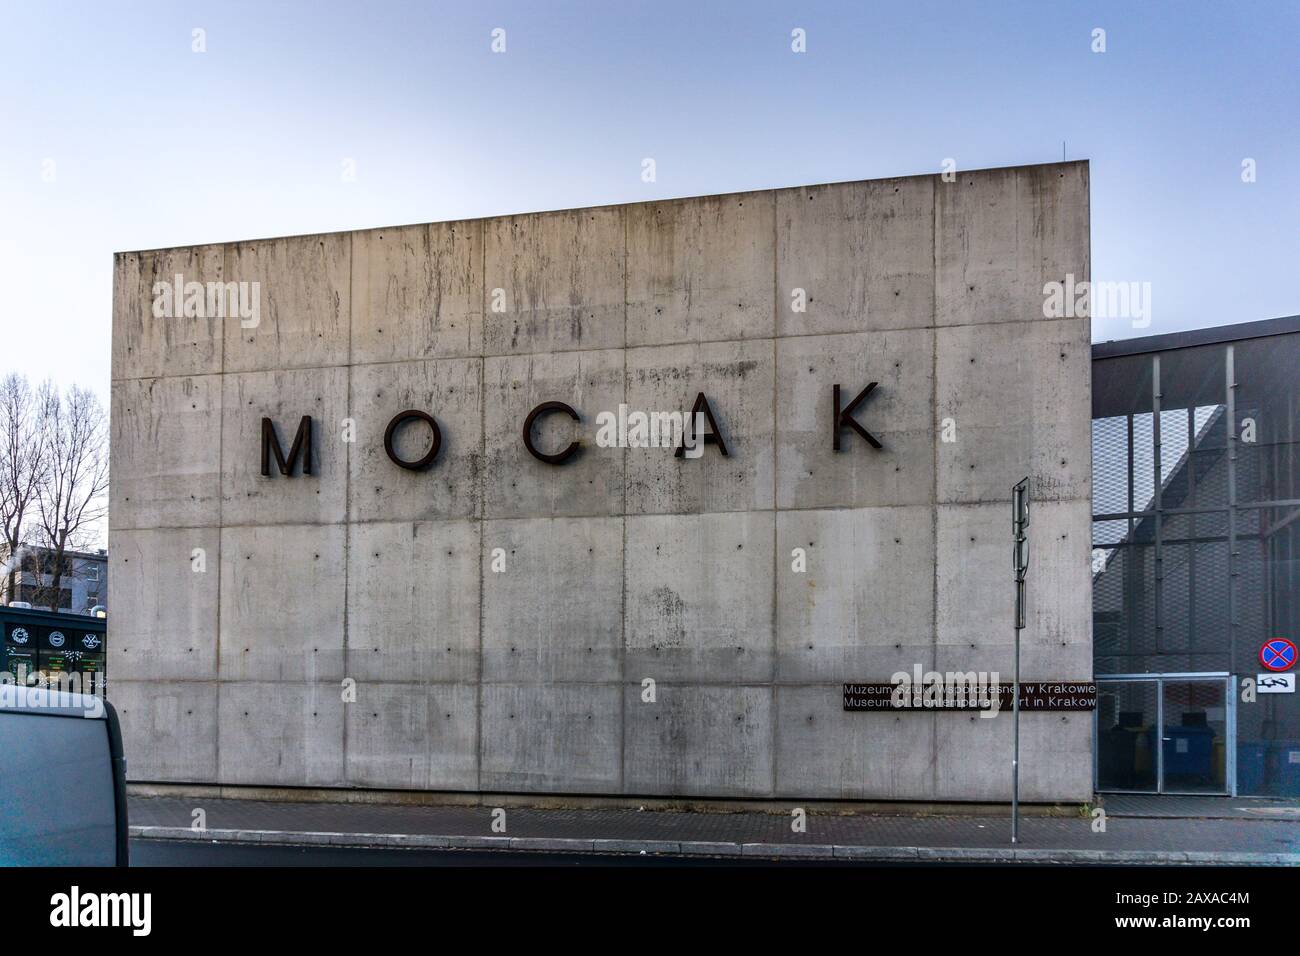 Mocak segno, Cracovia, Polonia, Europa Foto Stock